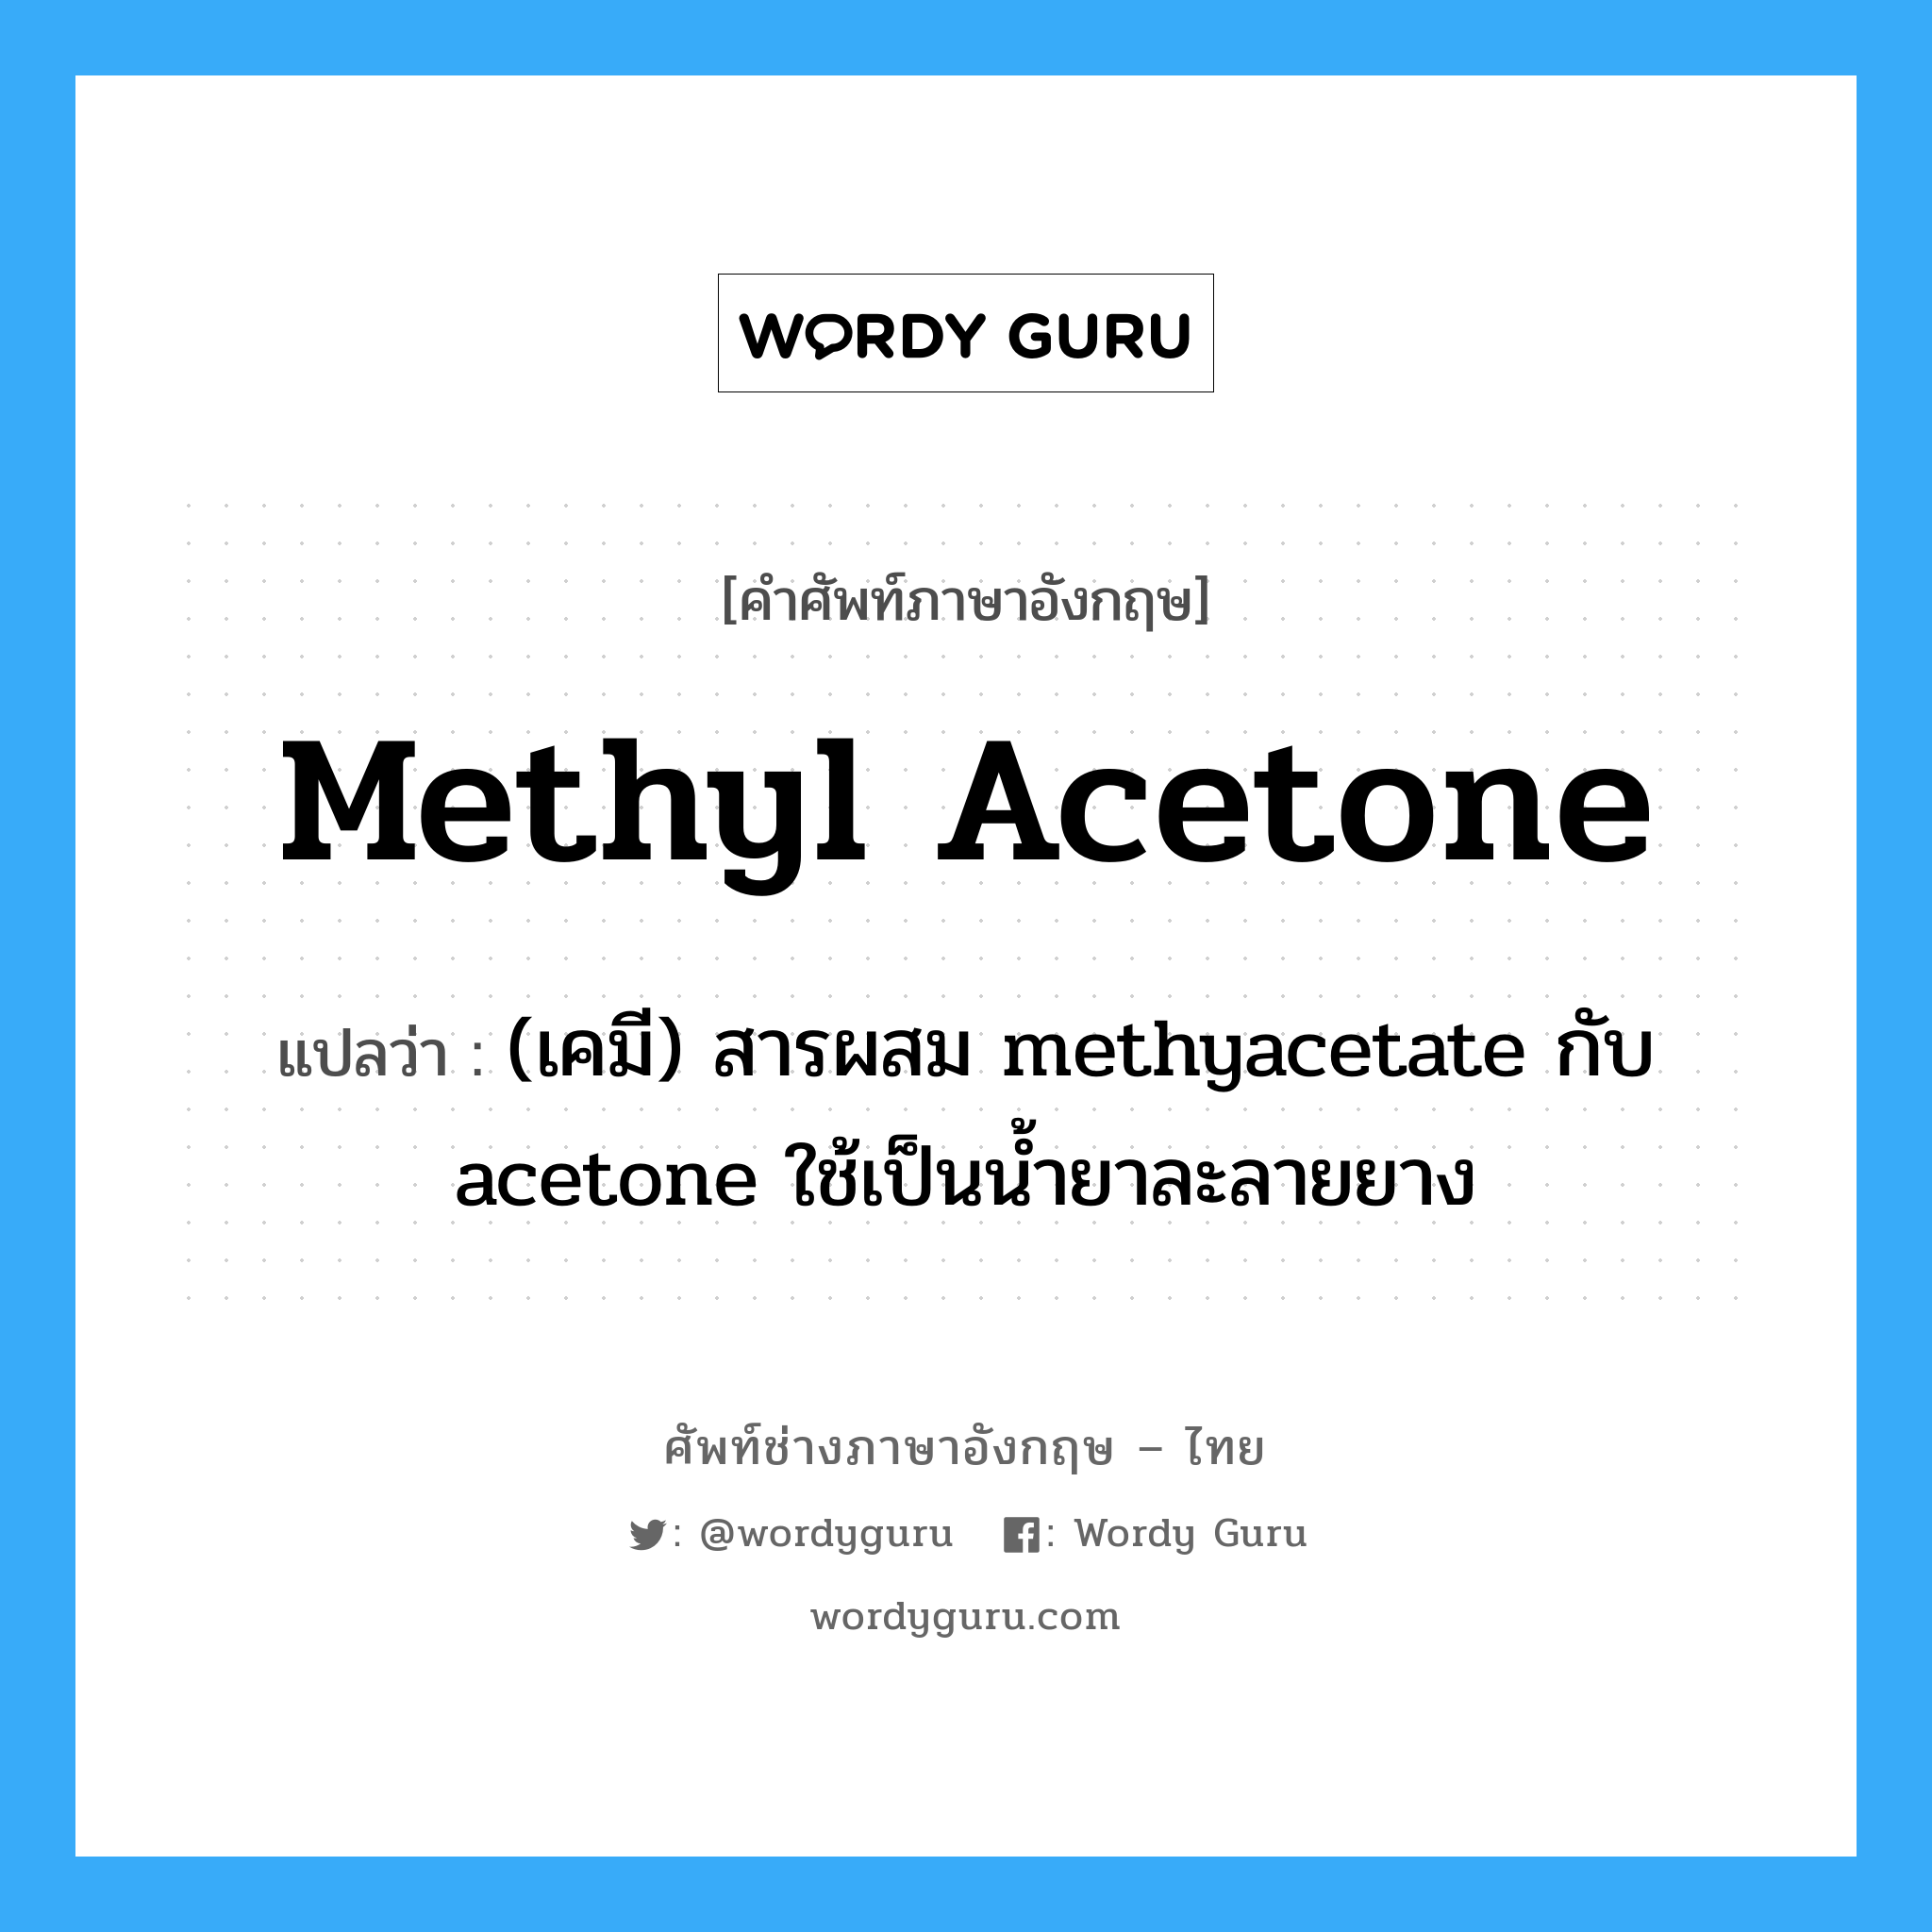 (เคมี) สารผสม methyacetate กับ acetone ใช้เป็นน้ำยาละลายยาง ภาษาอังกฤษ?, คำศัพท์ช่างภาษาอังกฤษ - ไทย (เคมี) สารผสม methyacetate กับ acetone ใช้เป็นน้ำยาละลายยาง คำศัพท์ภาษาอังกฤษ (เคมี) สารผสม methyacetate กับ acetone ใช้เป็นน้ำยาละลายยาง แปลว่า methyl acetone